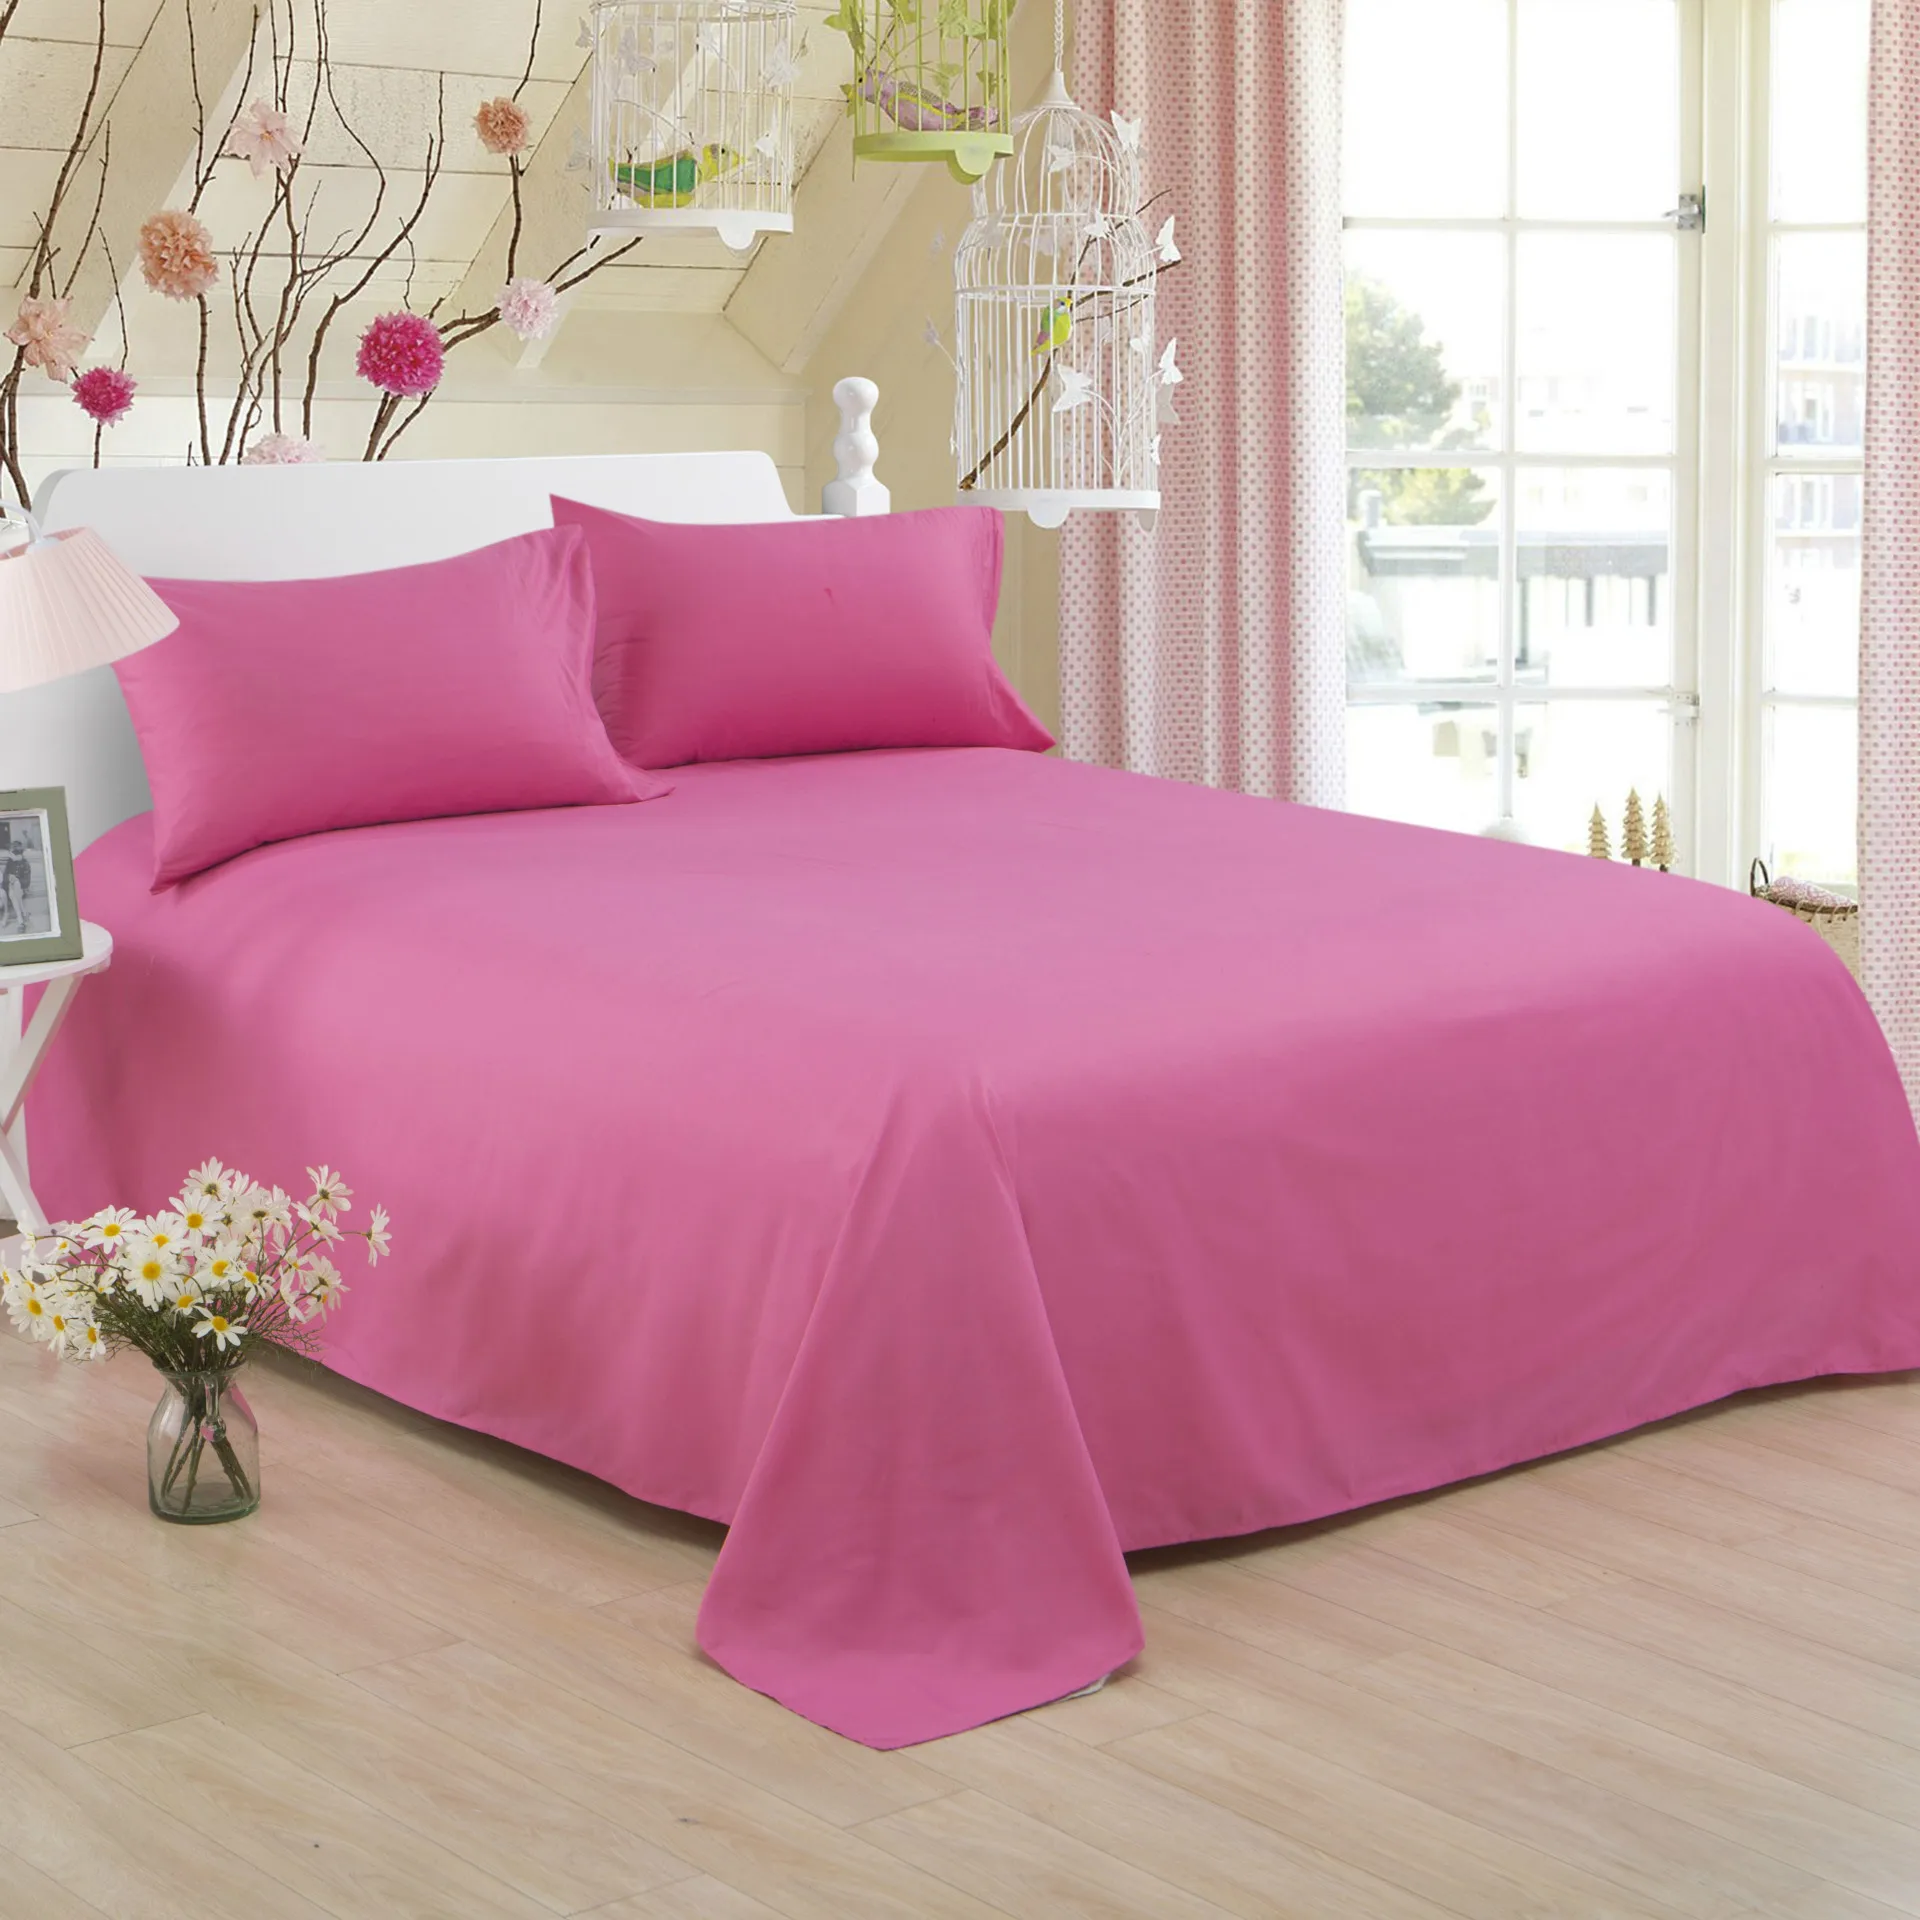 Ropa de Кама сплошной цвет полиэстер хлопок простыня отеле домашняя 1,2/1,5/1,8/2 m постельное покрывало с фабрики может быть customized15 - Цвет: Rose Red